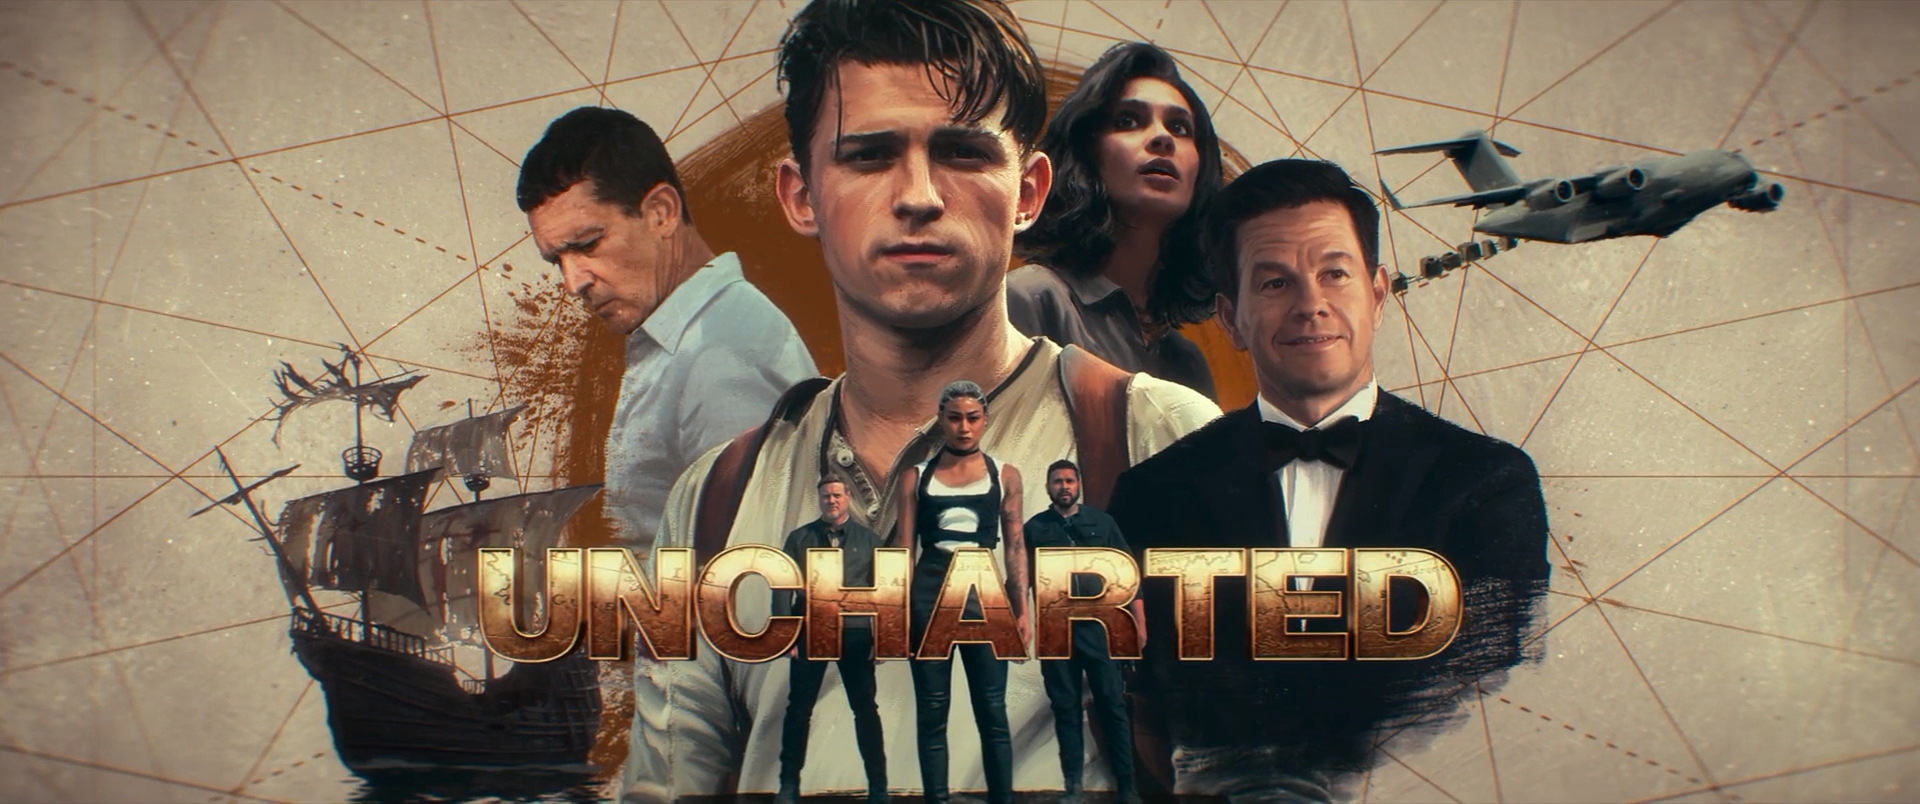 مشاهدة فيلم Uncharted 2022 مترجم كامل على ايجي بست